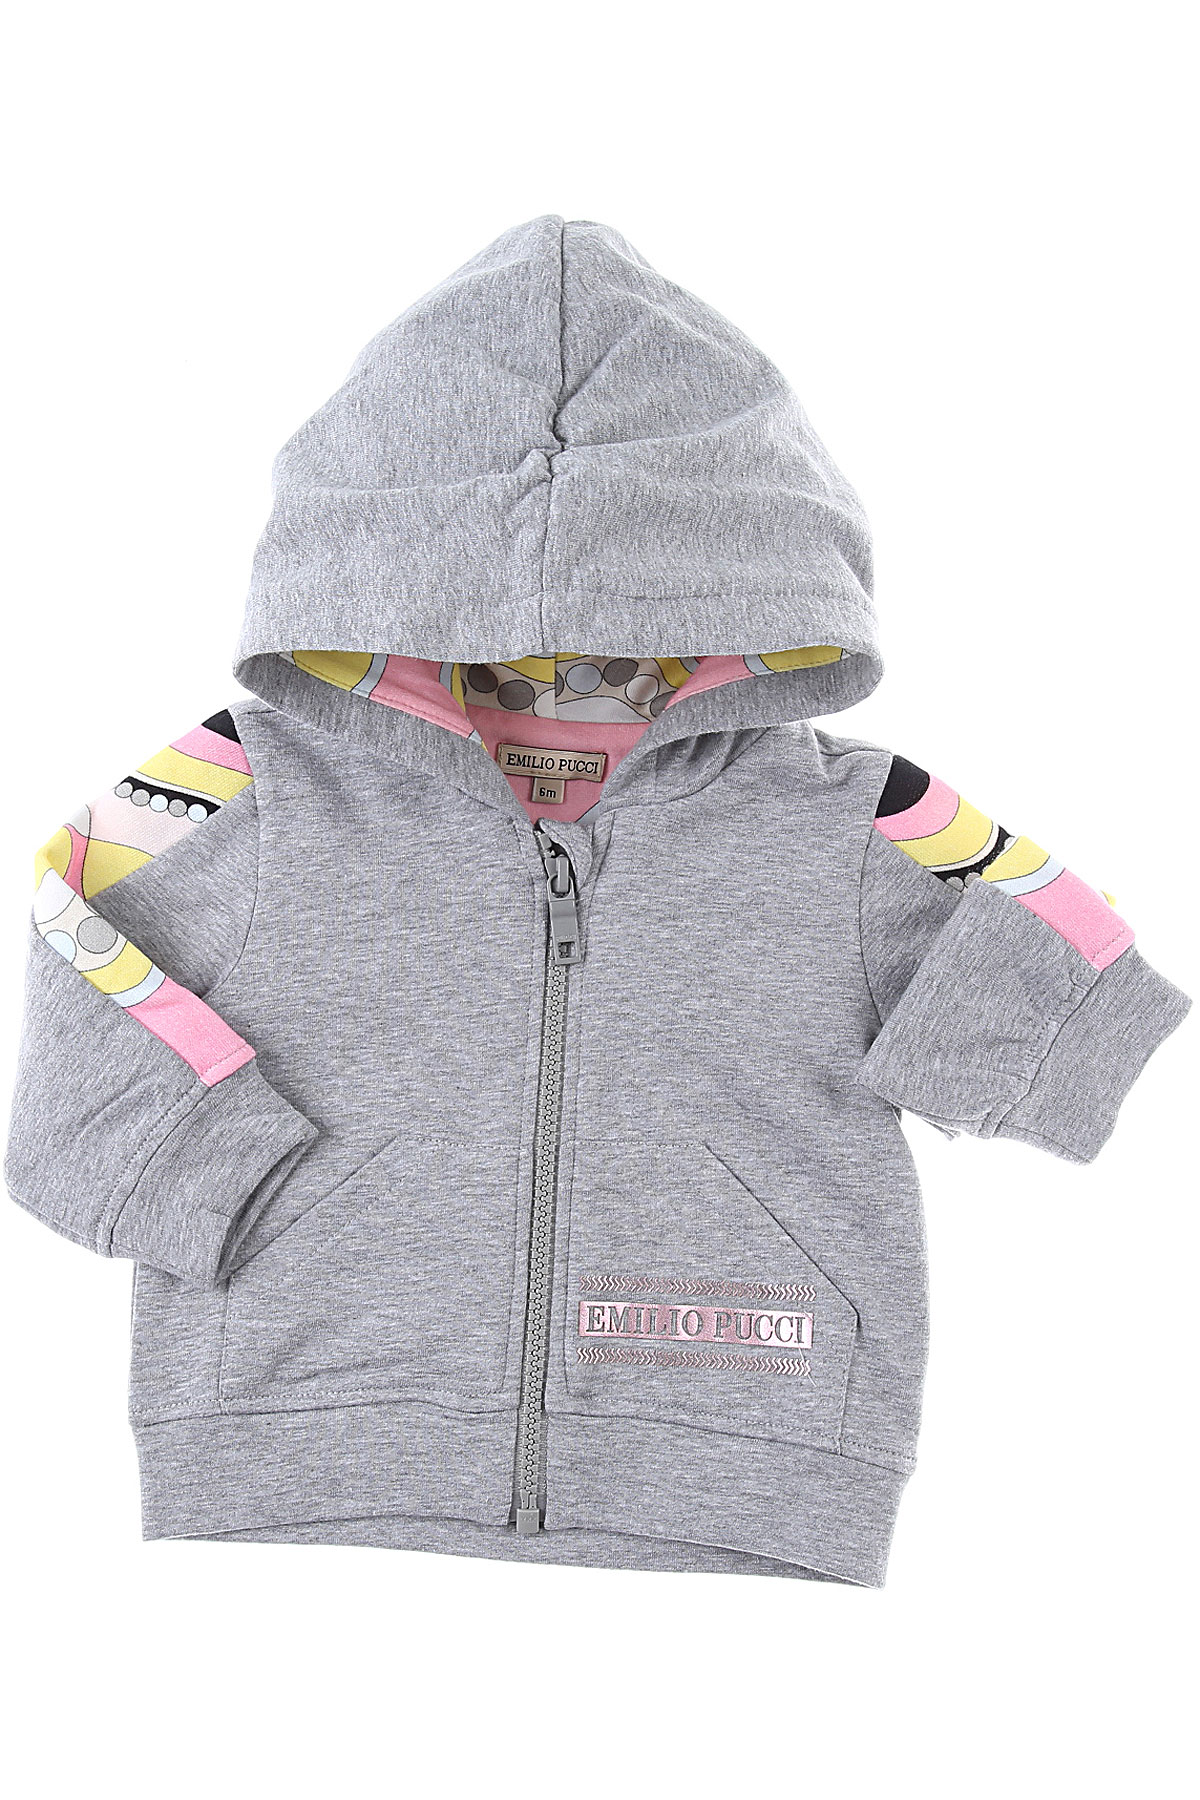 Emilio Pucci Baby Sweatshirt & Kapuzenpullover für Mädchen Günstig im Sale, Grau, Baumwolle, 2017, 12M 18M 2Y 6M 9M